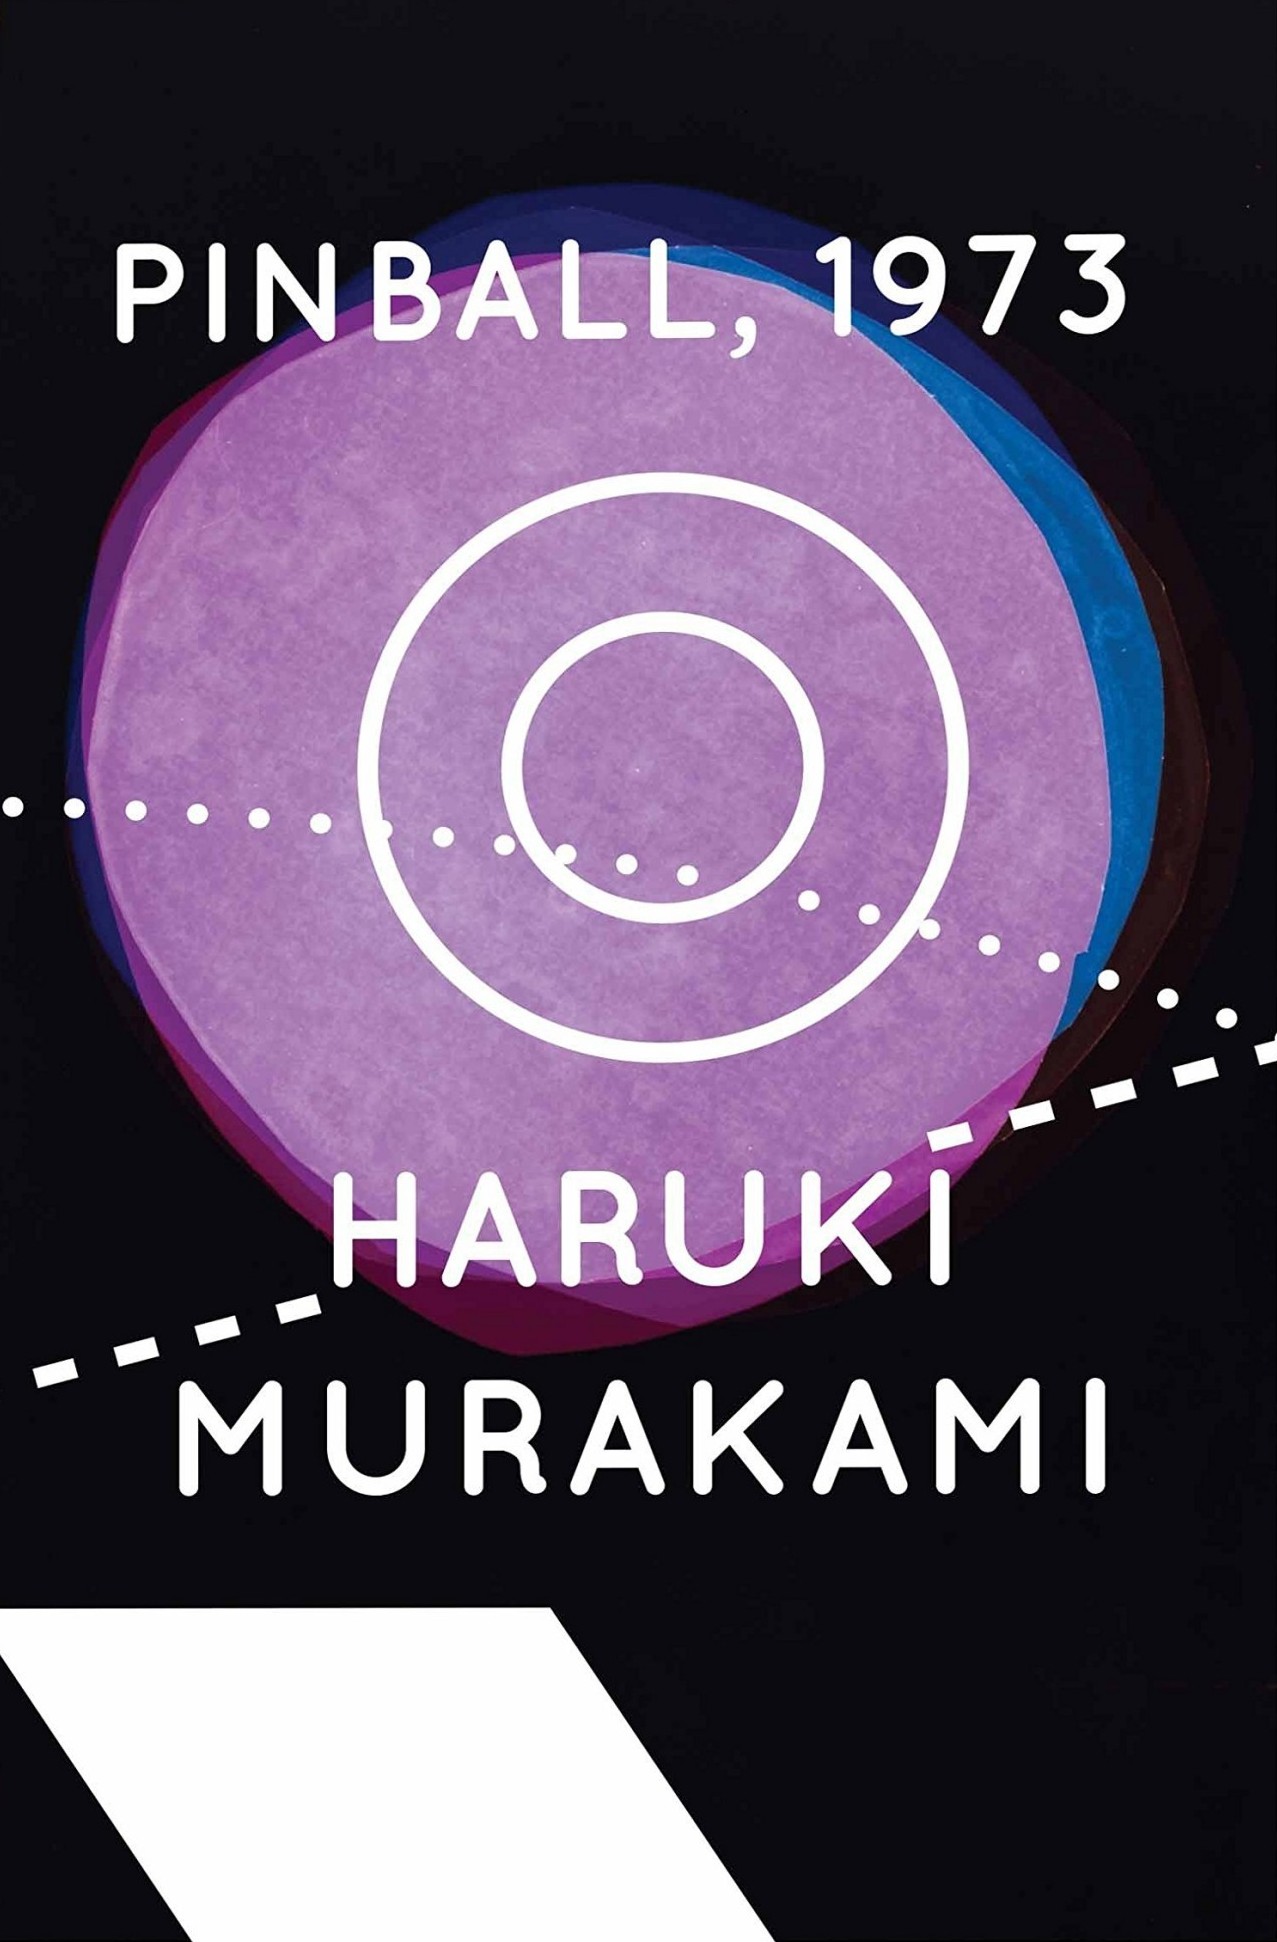 Haruki Murakami: Pinball, 1973 (1985, Kodansha International)